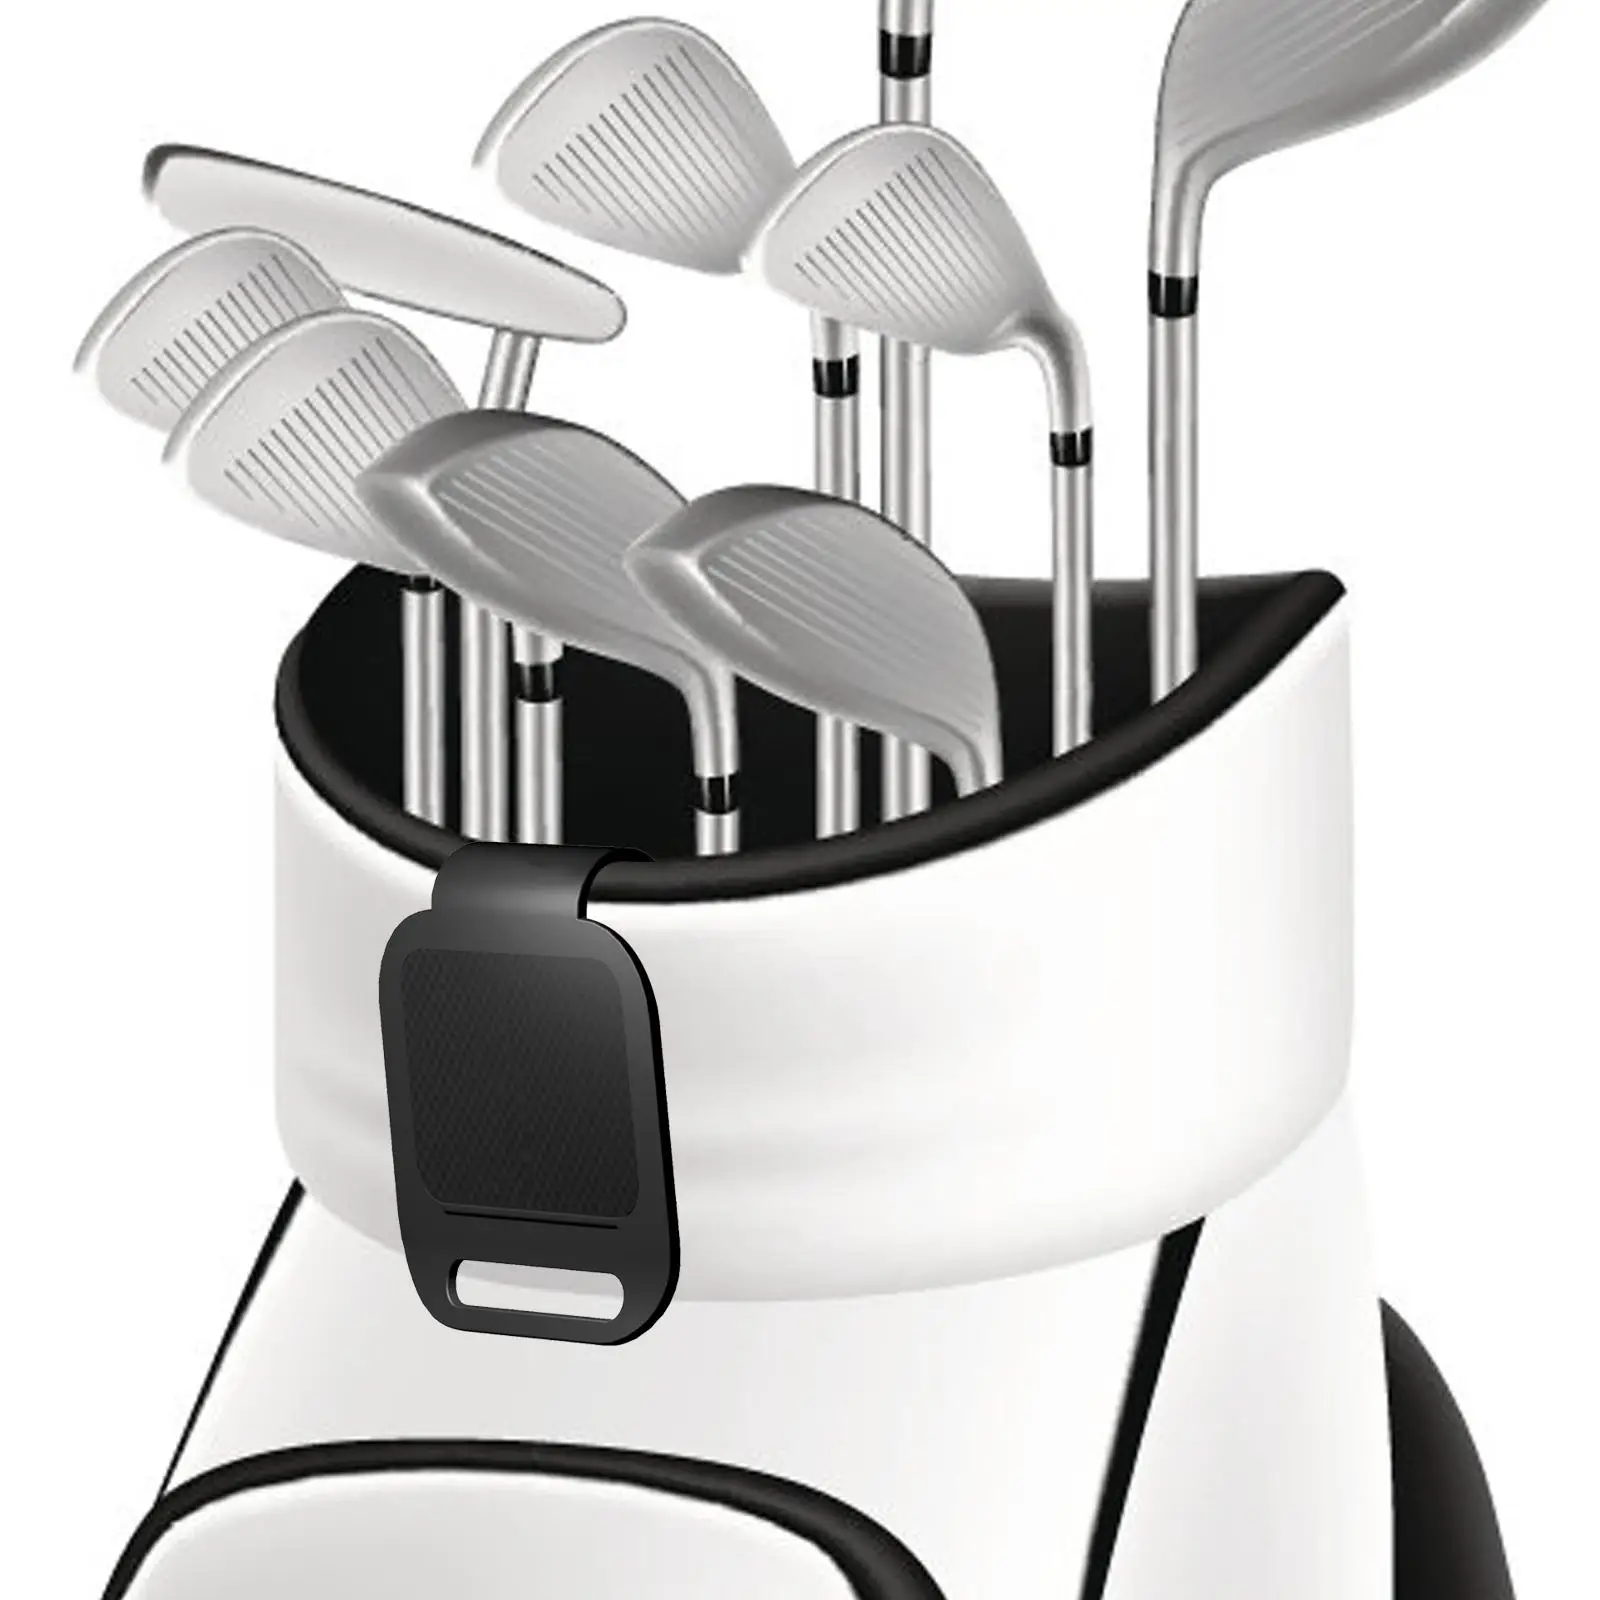 Golf Bag Metal Landing Pad Metal Landing Clips Holder Bag Clips for Rangefinder Strap Magnetic Golf Gear Accessories Organizer